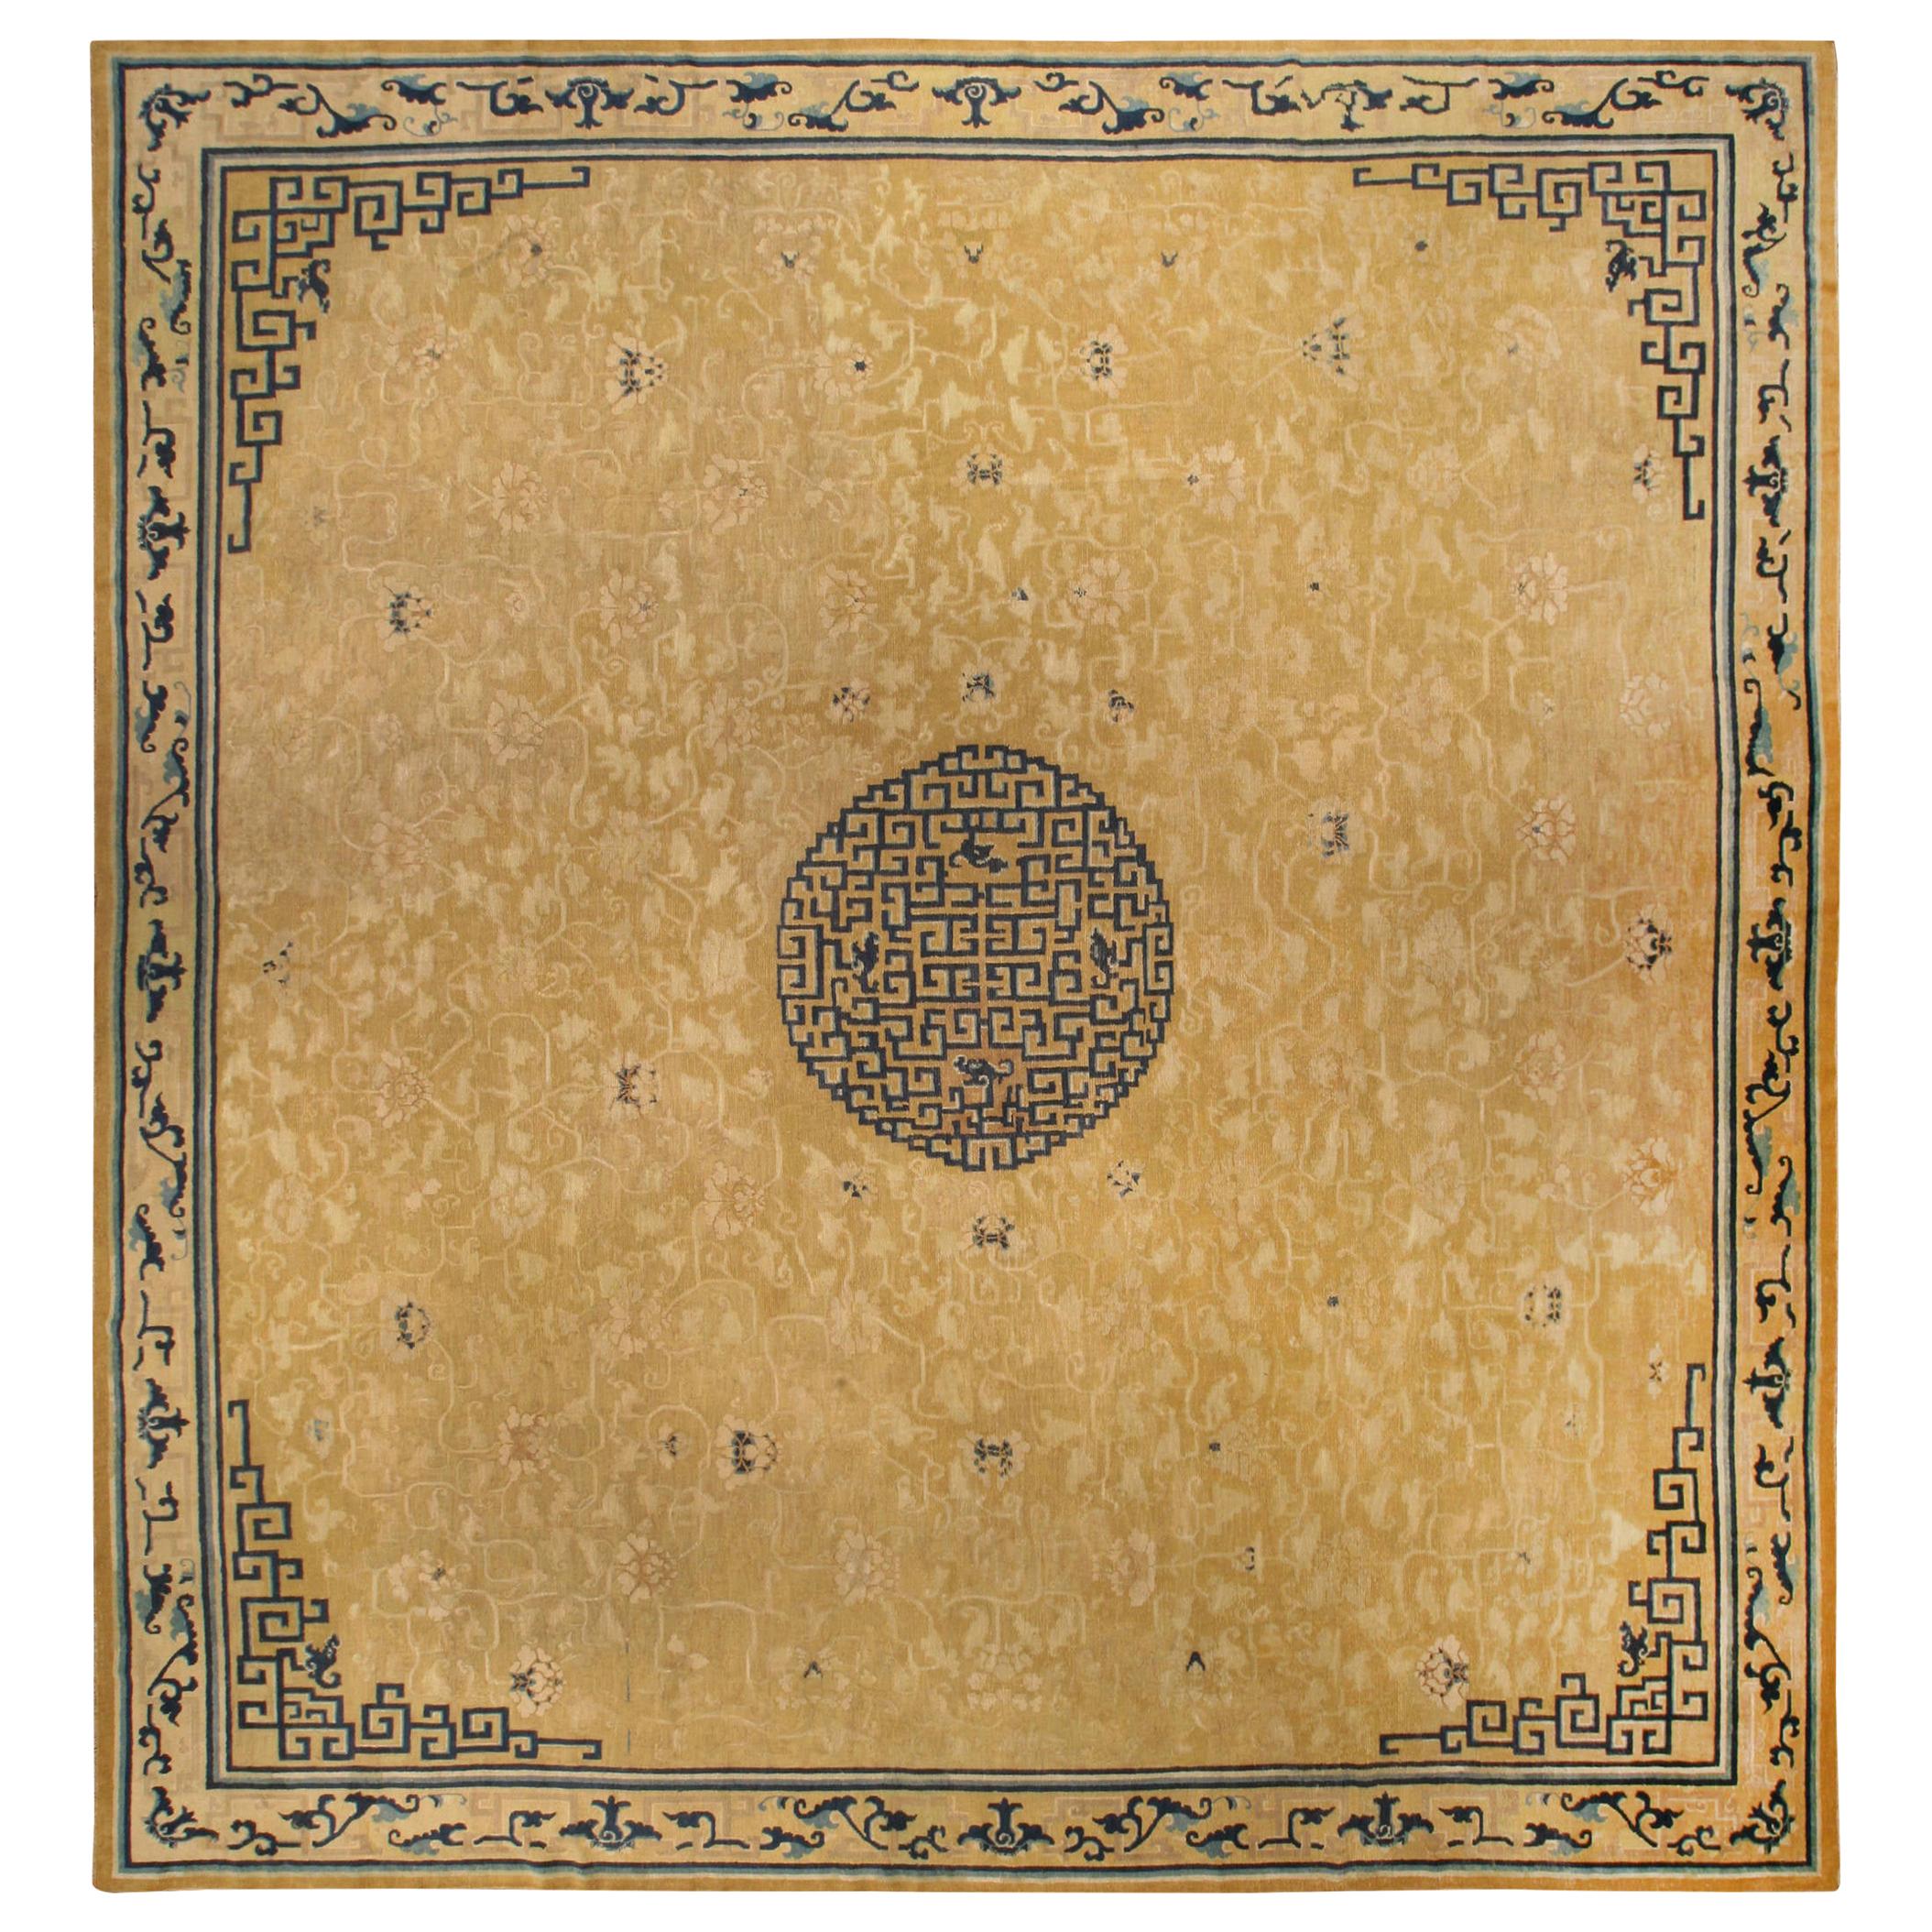 Großer authentischer handgefertigter chinesischer Teppich aus dem 19.